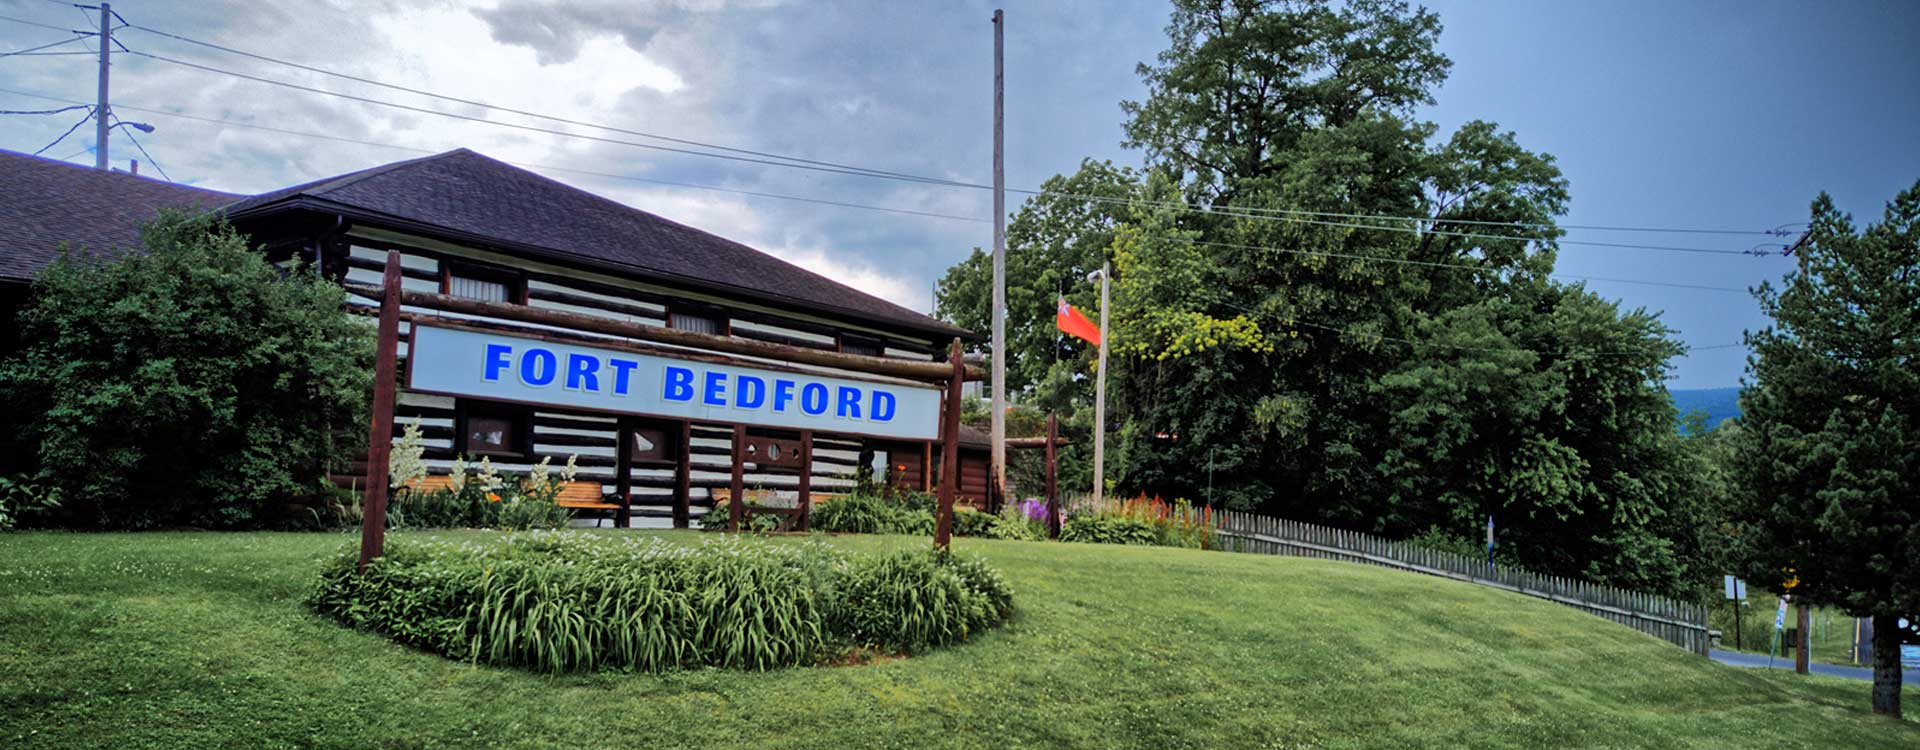 Fort Bedford